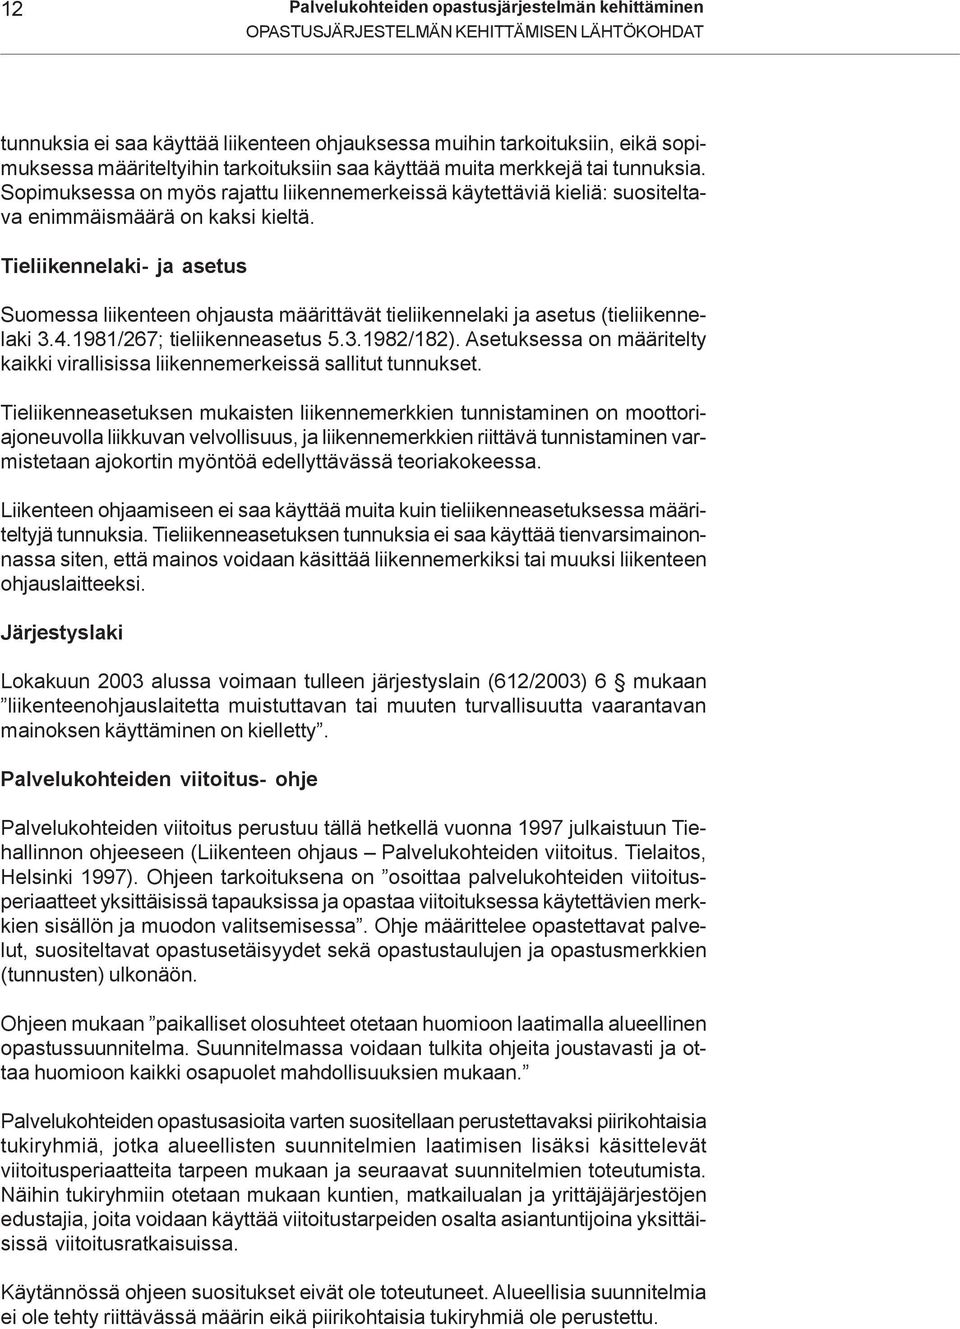 Tieliikennelaki- ja asetus Suomessa liikenteen ohjausta määrittävät tieliikennelaki ja asetus (tieliikennelaki 3.4.1981/267; tieliikenneasetus 5.3.1982/182).